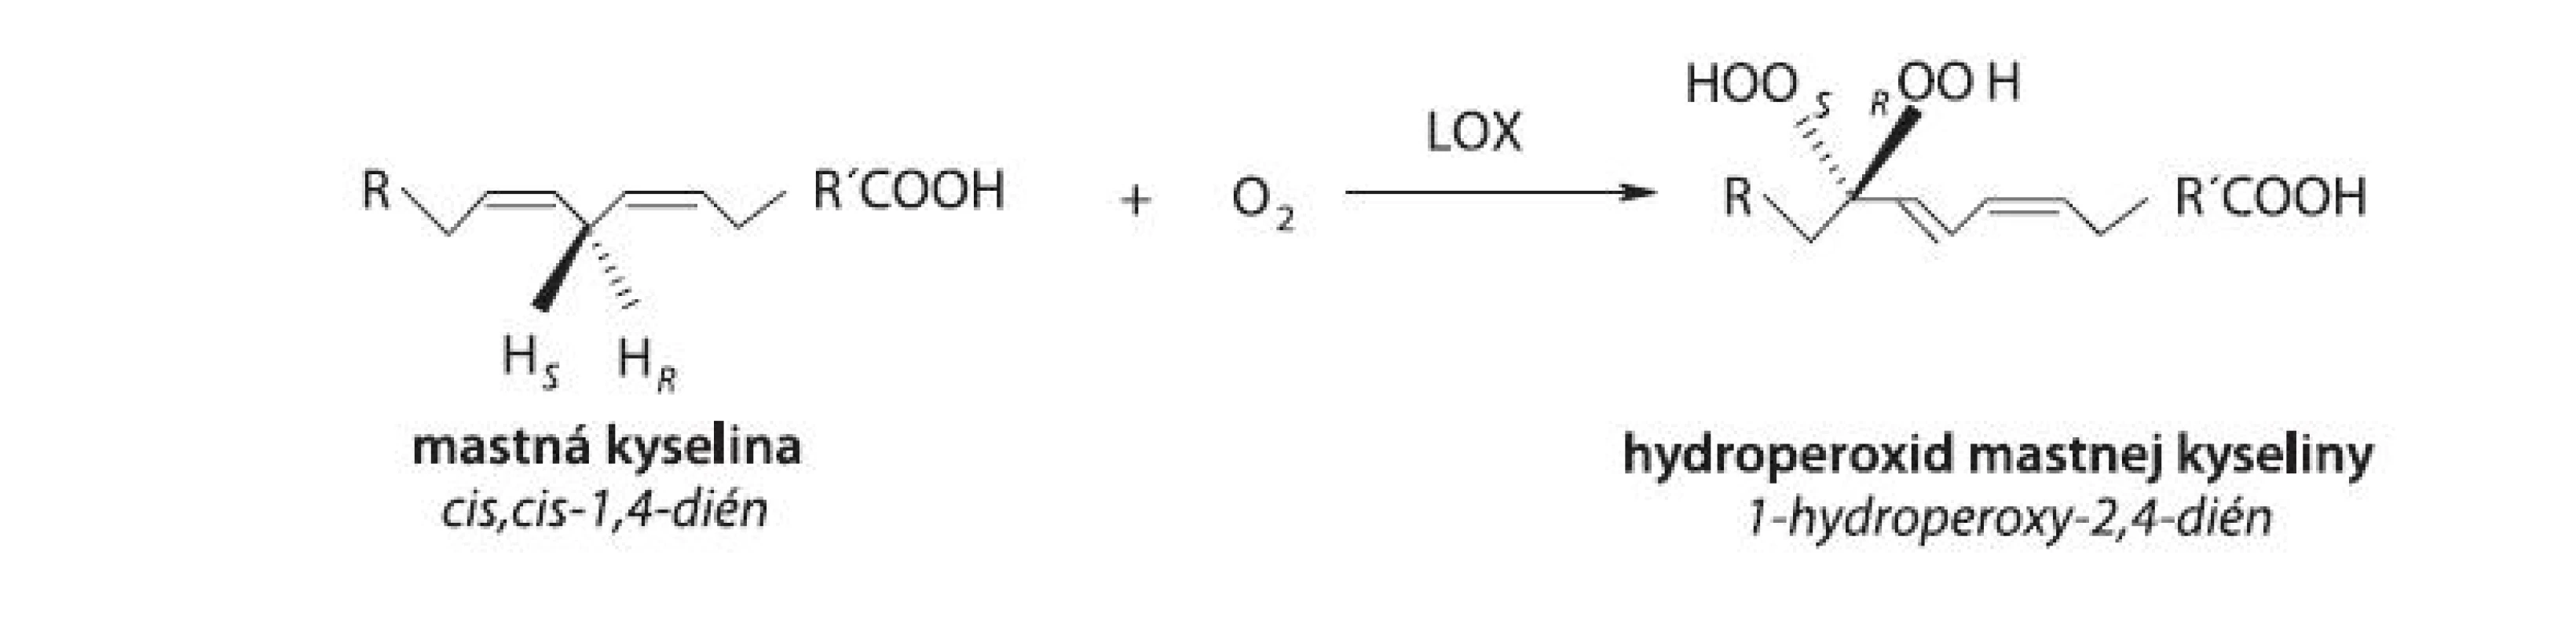 Hydroperoxidácia (1Z,4Z)-penta-1,4-diénovej štrukturálnej jednotky v alifatickom reťazci MK (R,R’: alifatický zvyšok, S,R: stereošpecifické označenie)